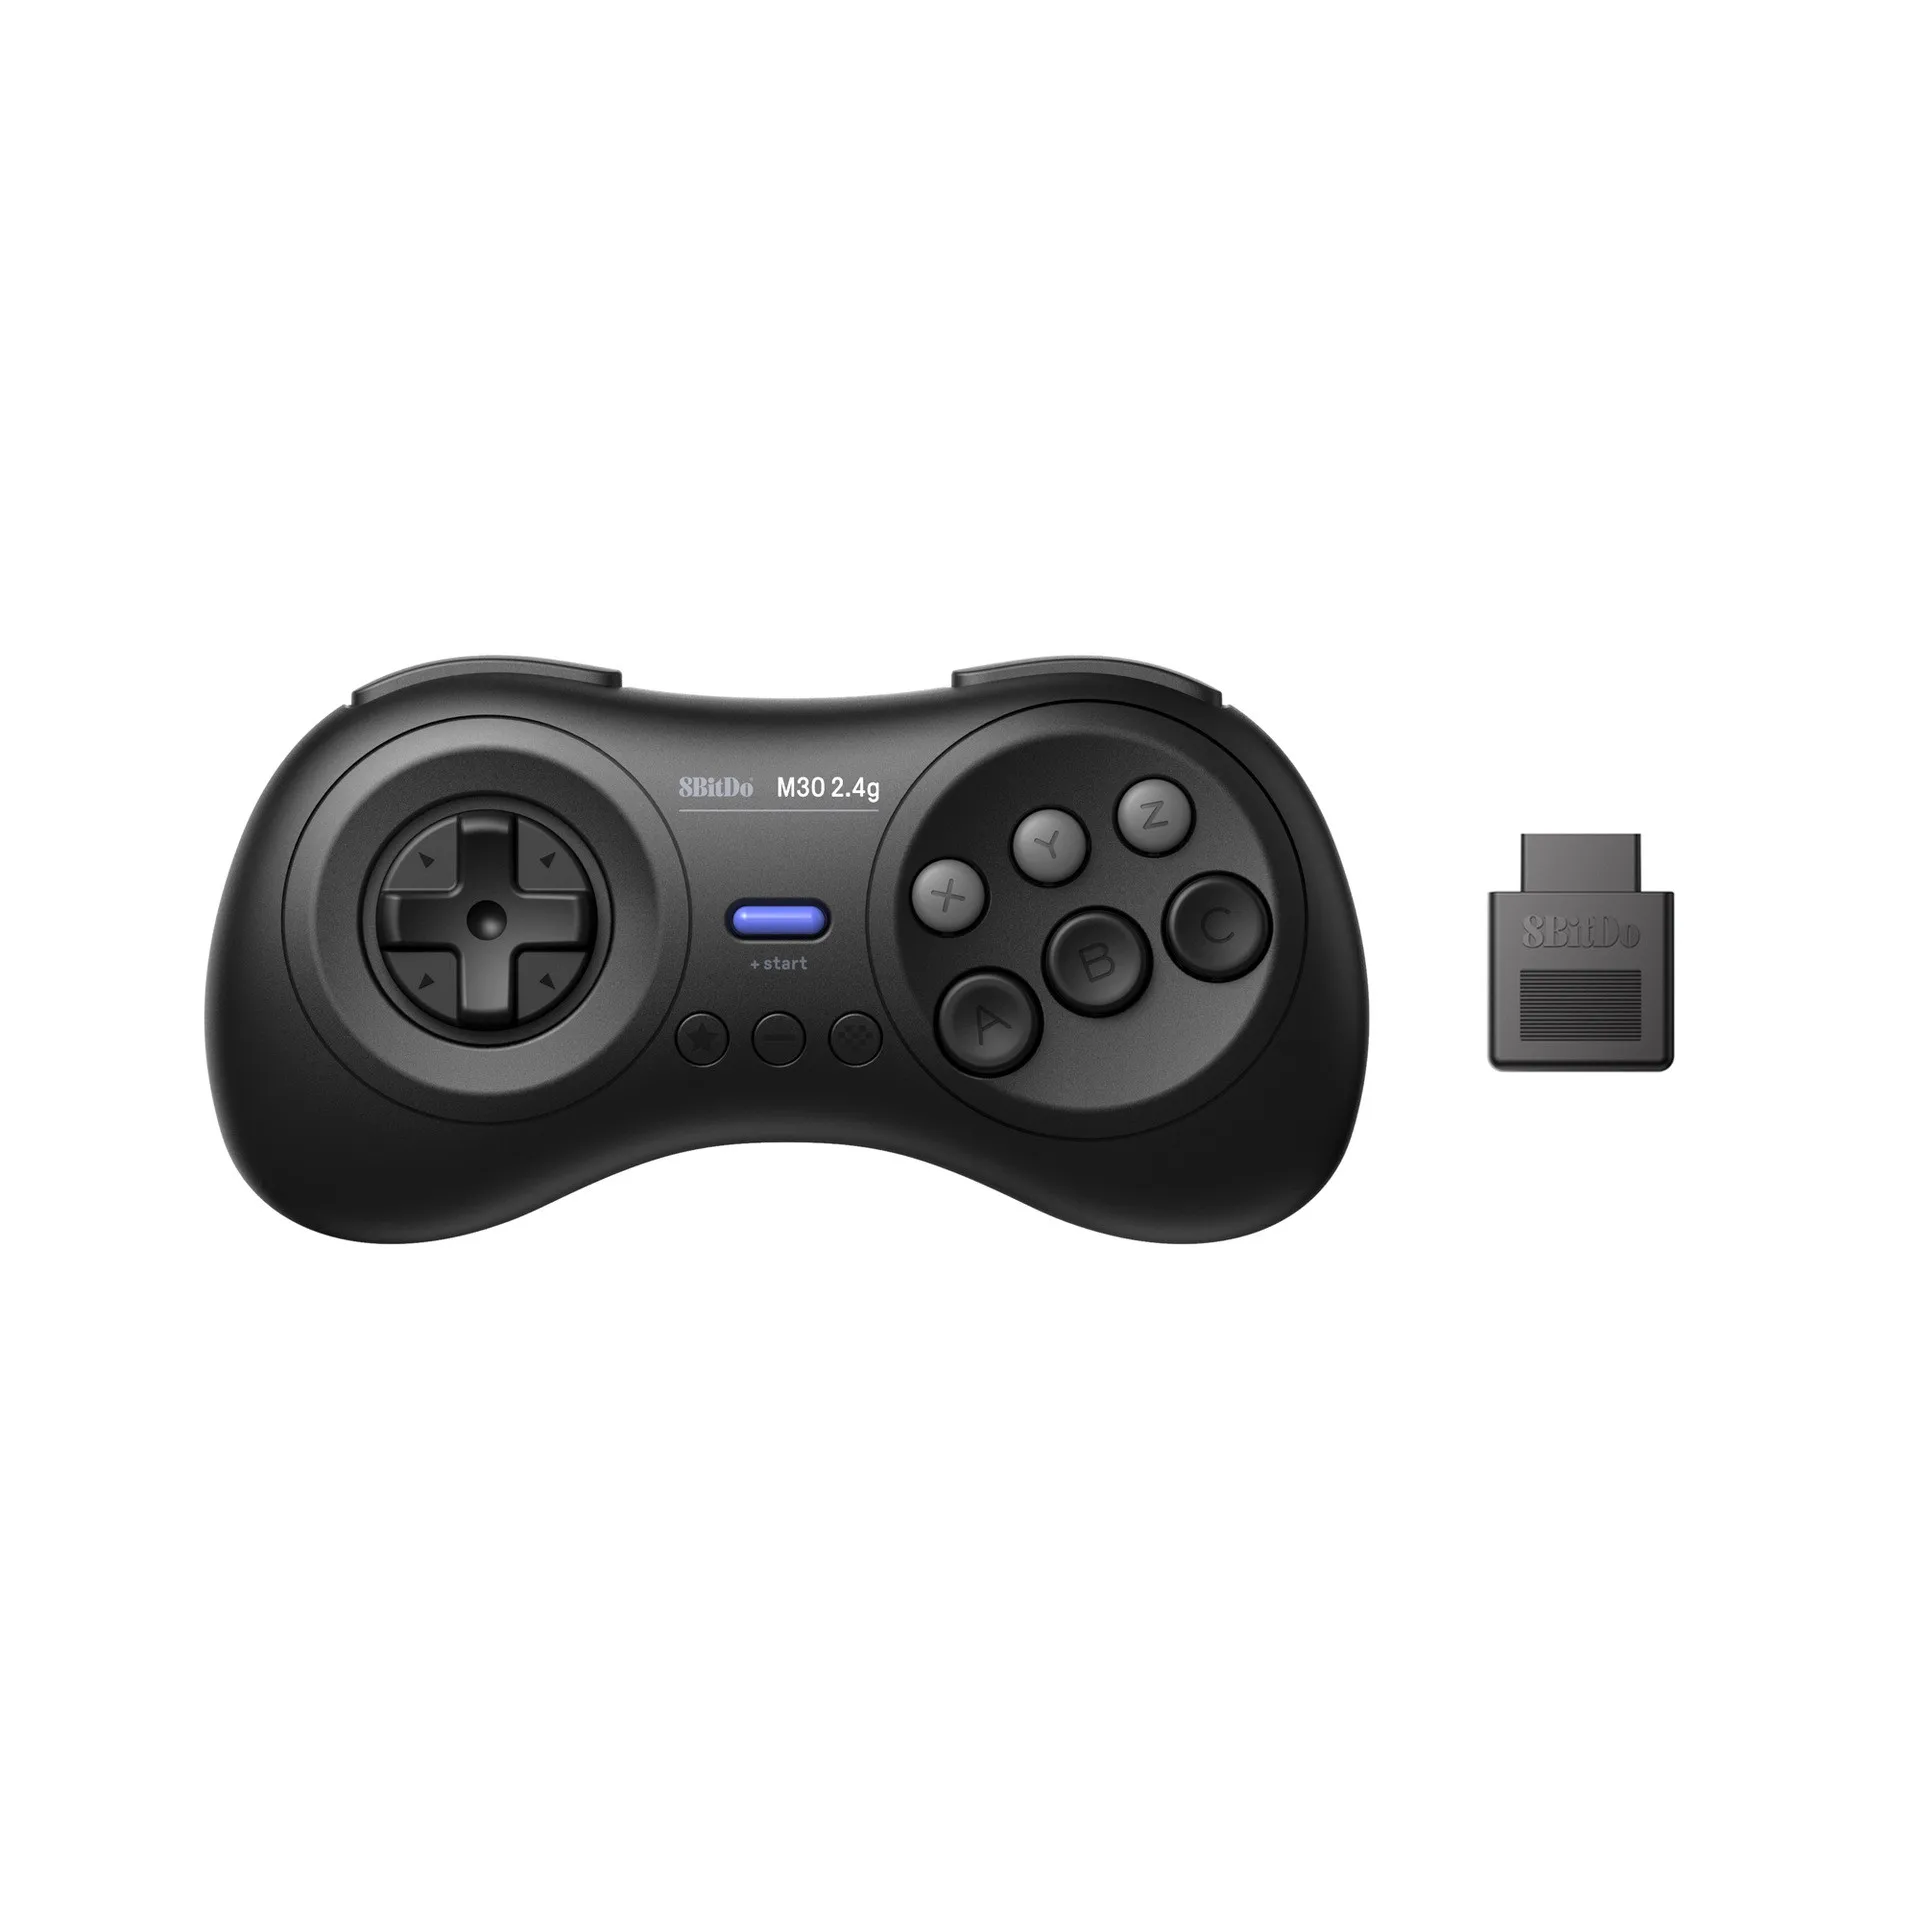 8BitDo M30 2.4G bezprzewodowy pad do gier kontroler do gier dla Sega Genesis i Sega Mega Drive kompatybilny z oryginalnymi sprzętowymi gamepadami